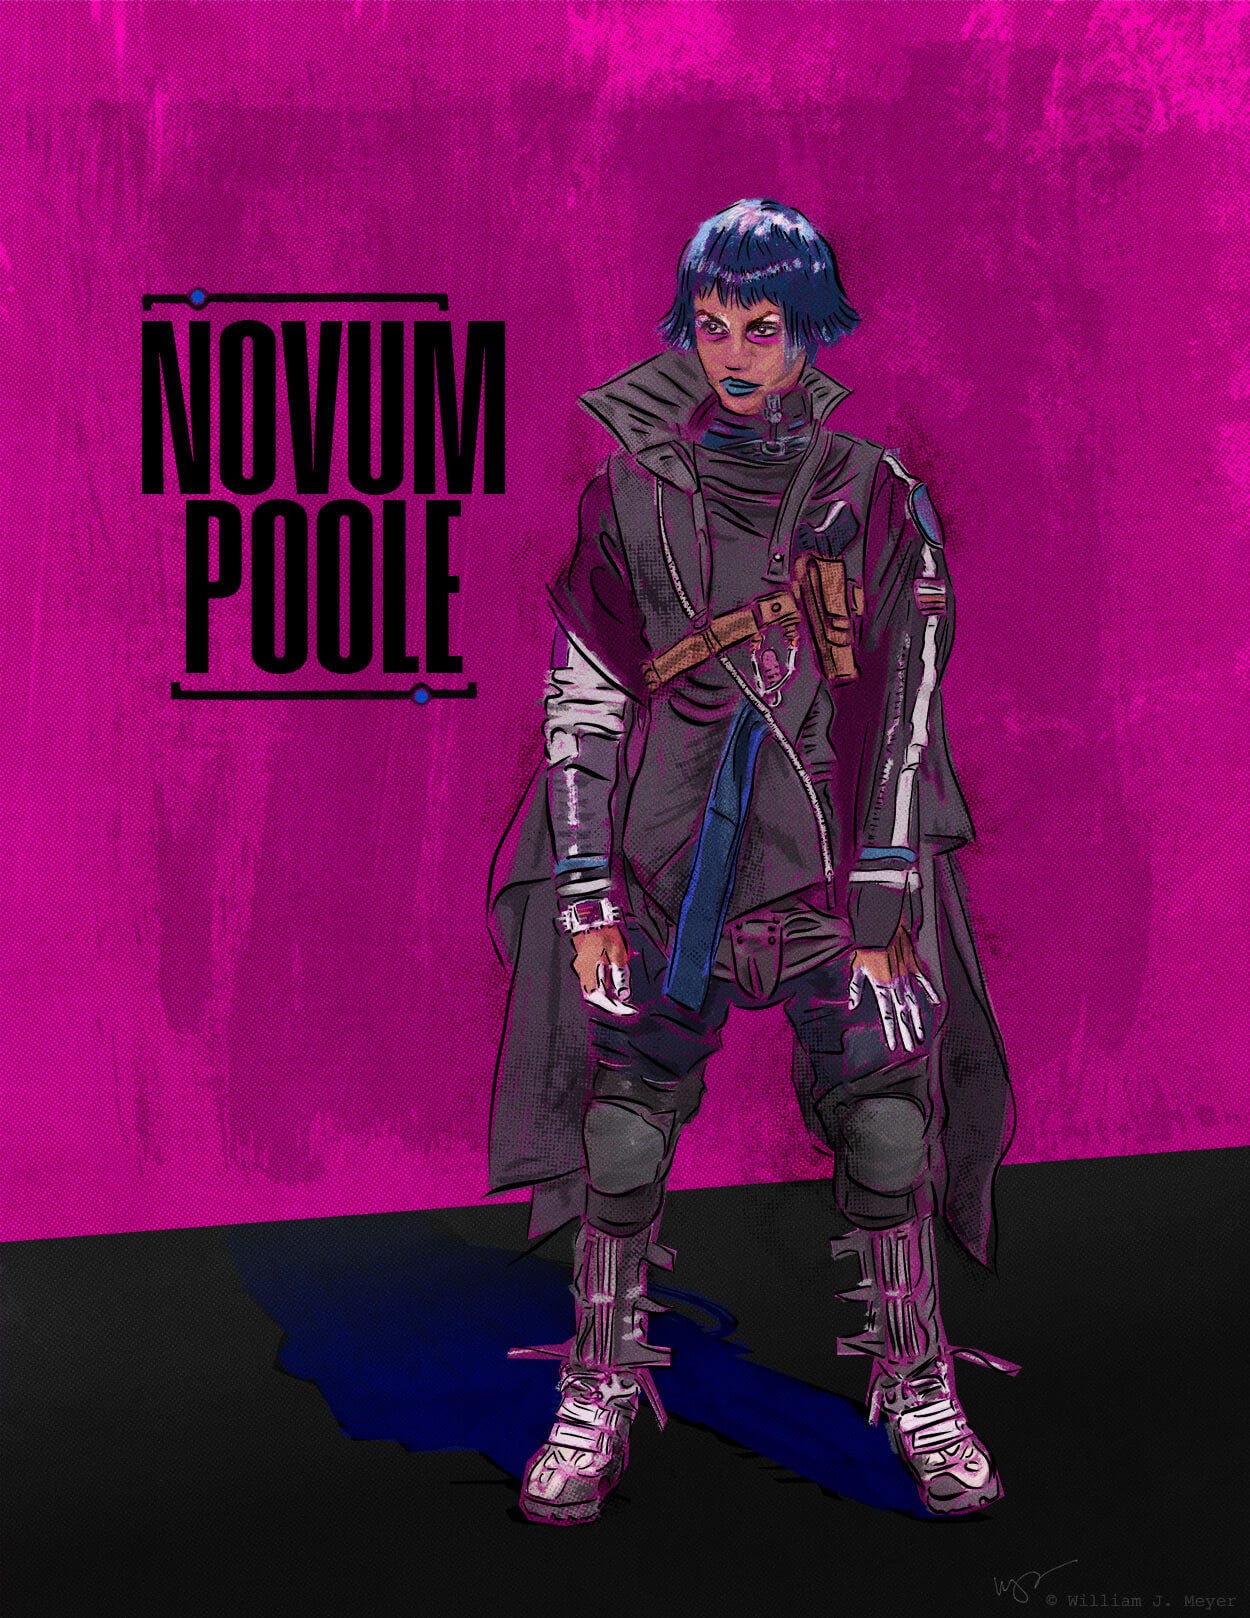 Novum Poole design by William J. Meyer